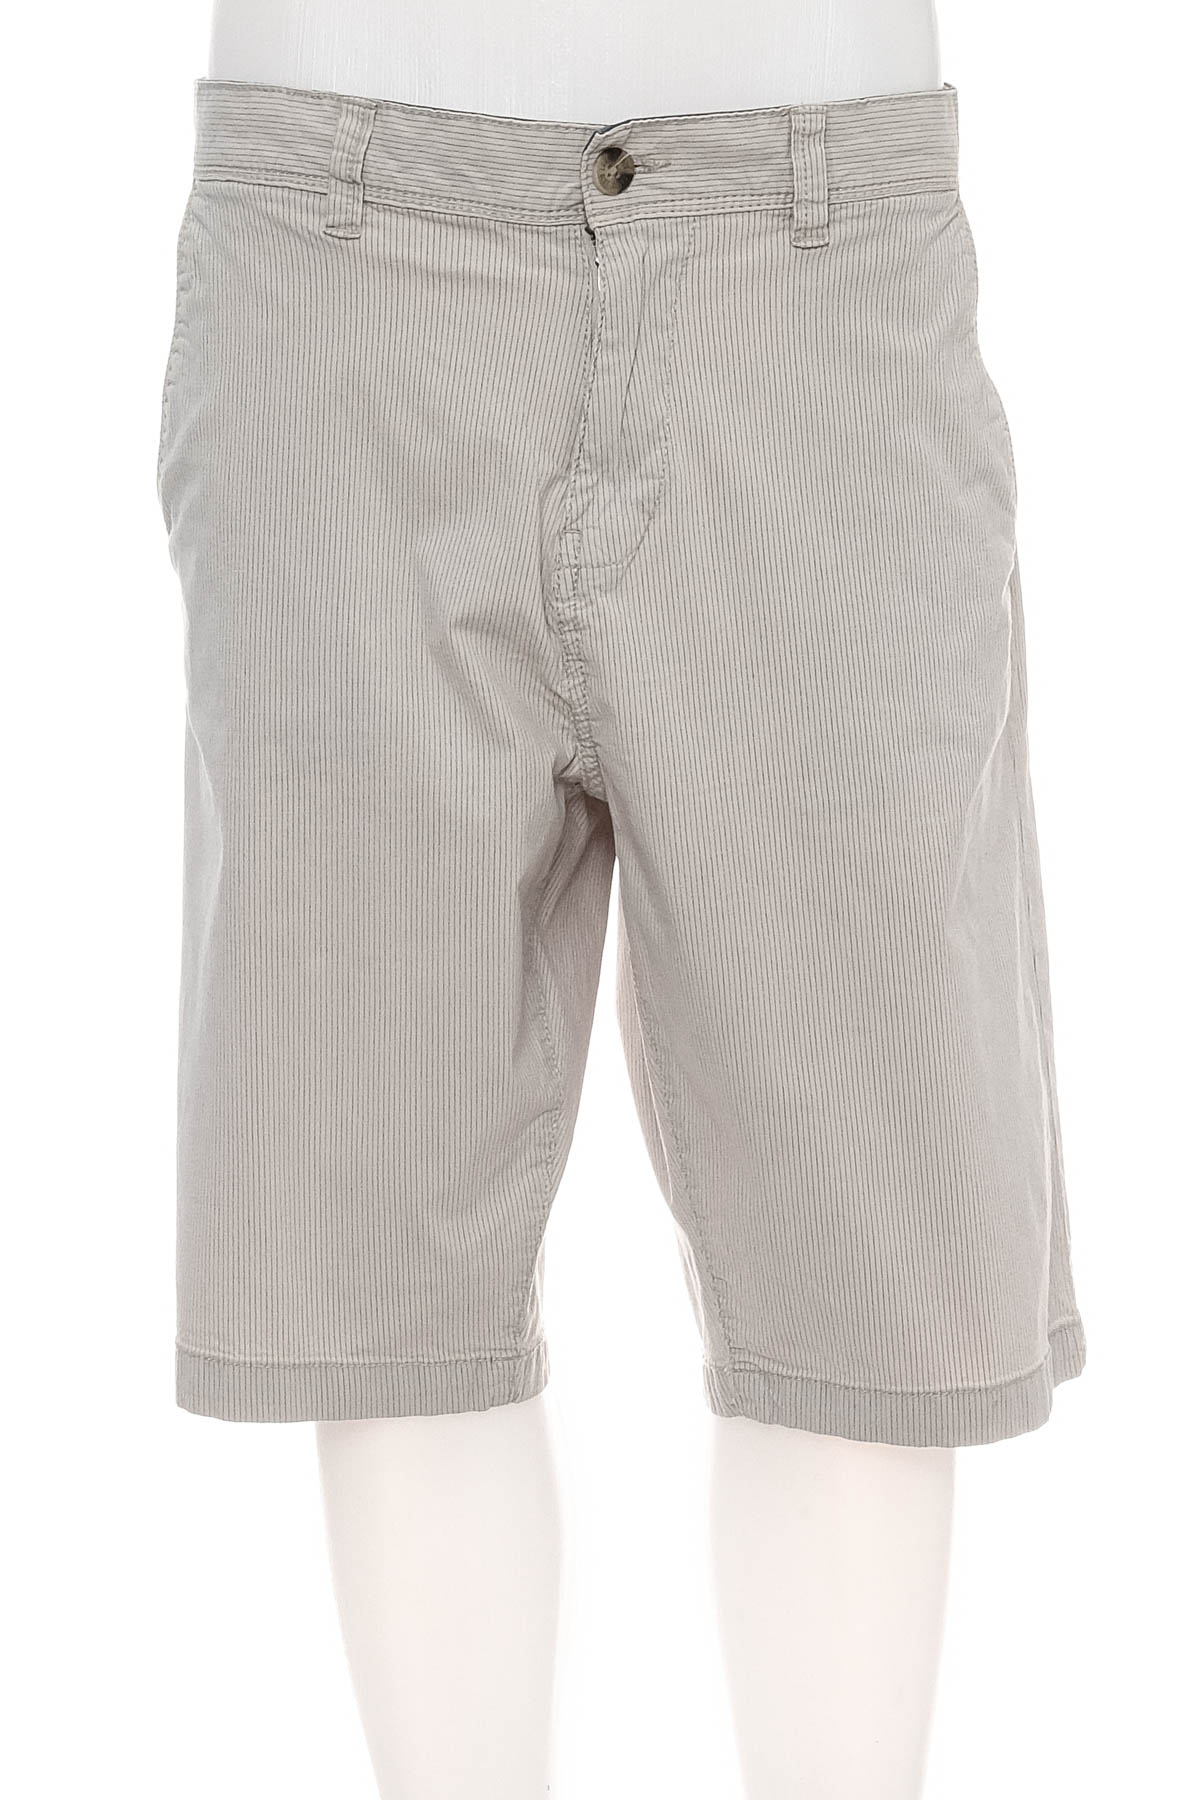 Pantaloni scurți bărbați - Lerros - 0